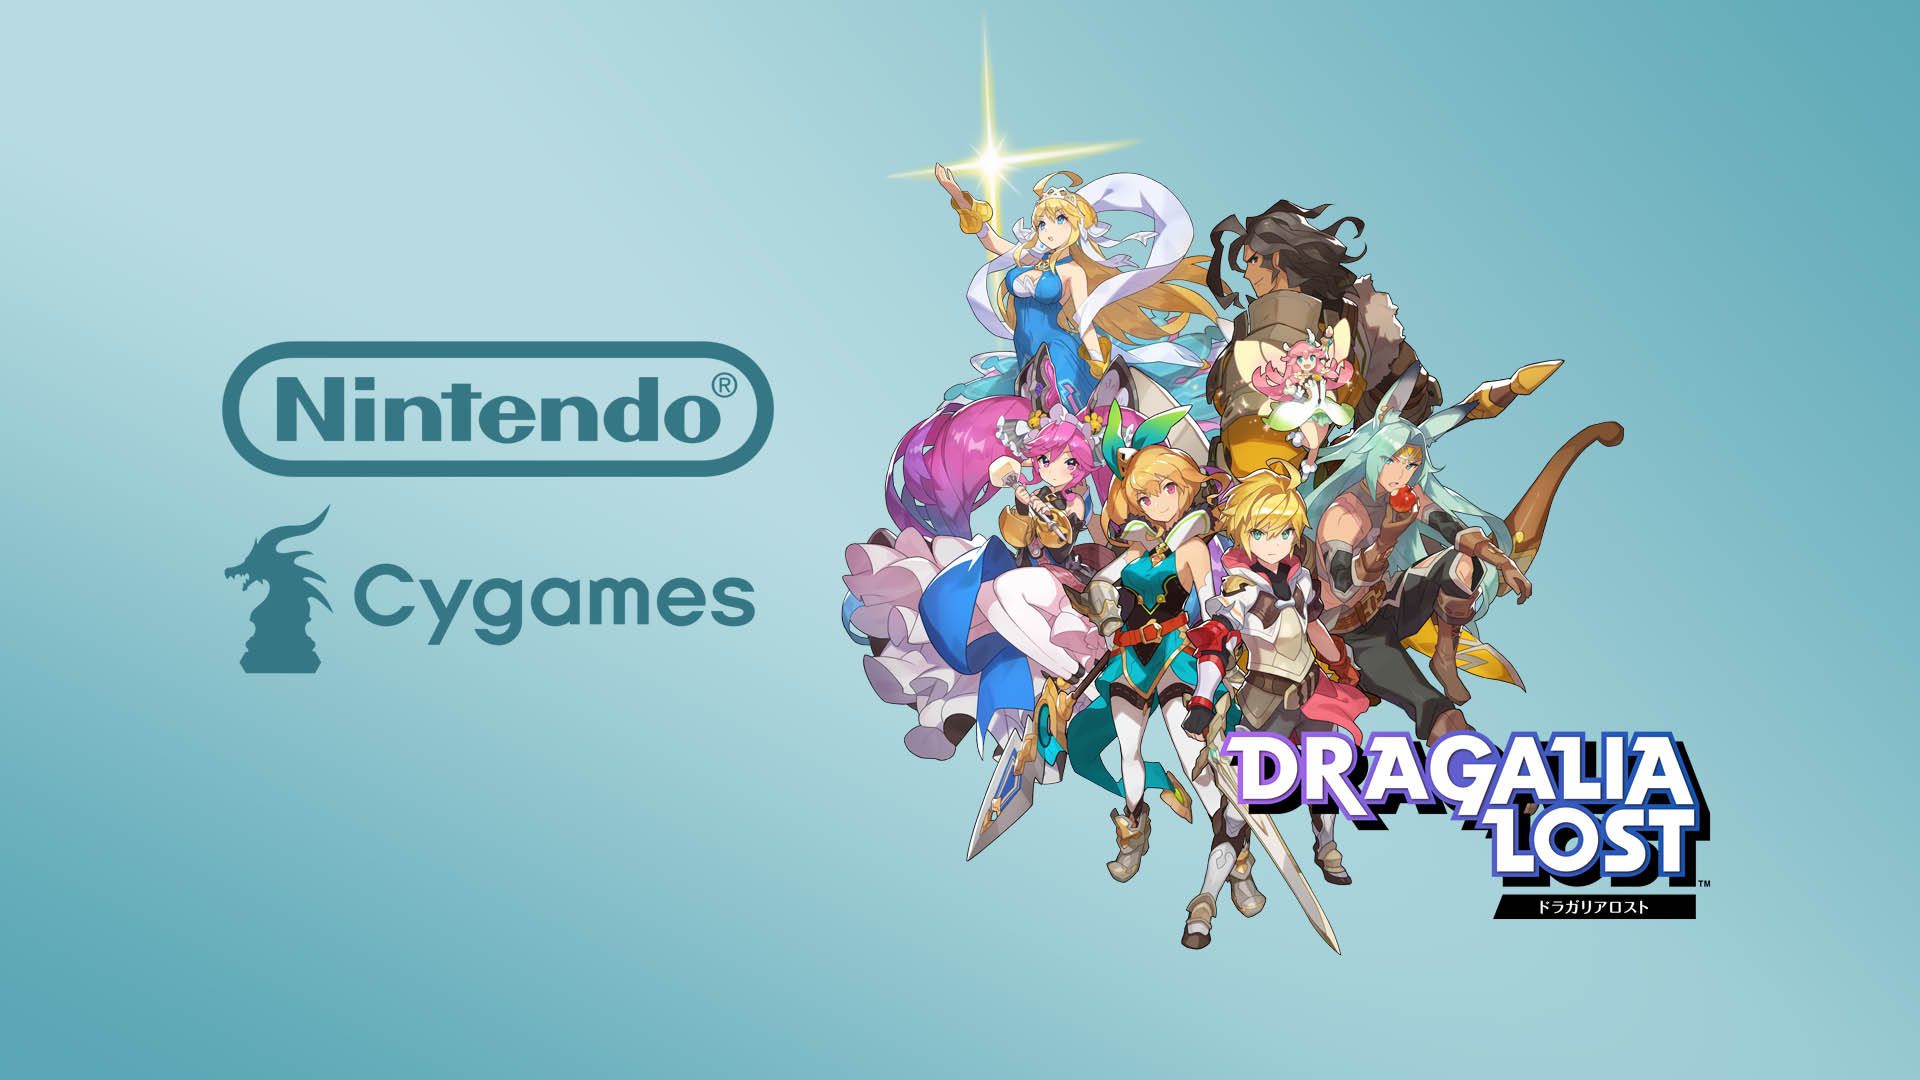 Banner-Cygames-Nintendo-Partnership-DragaliaLost.jpg